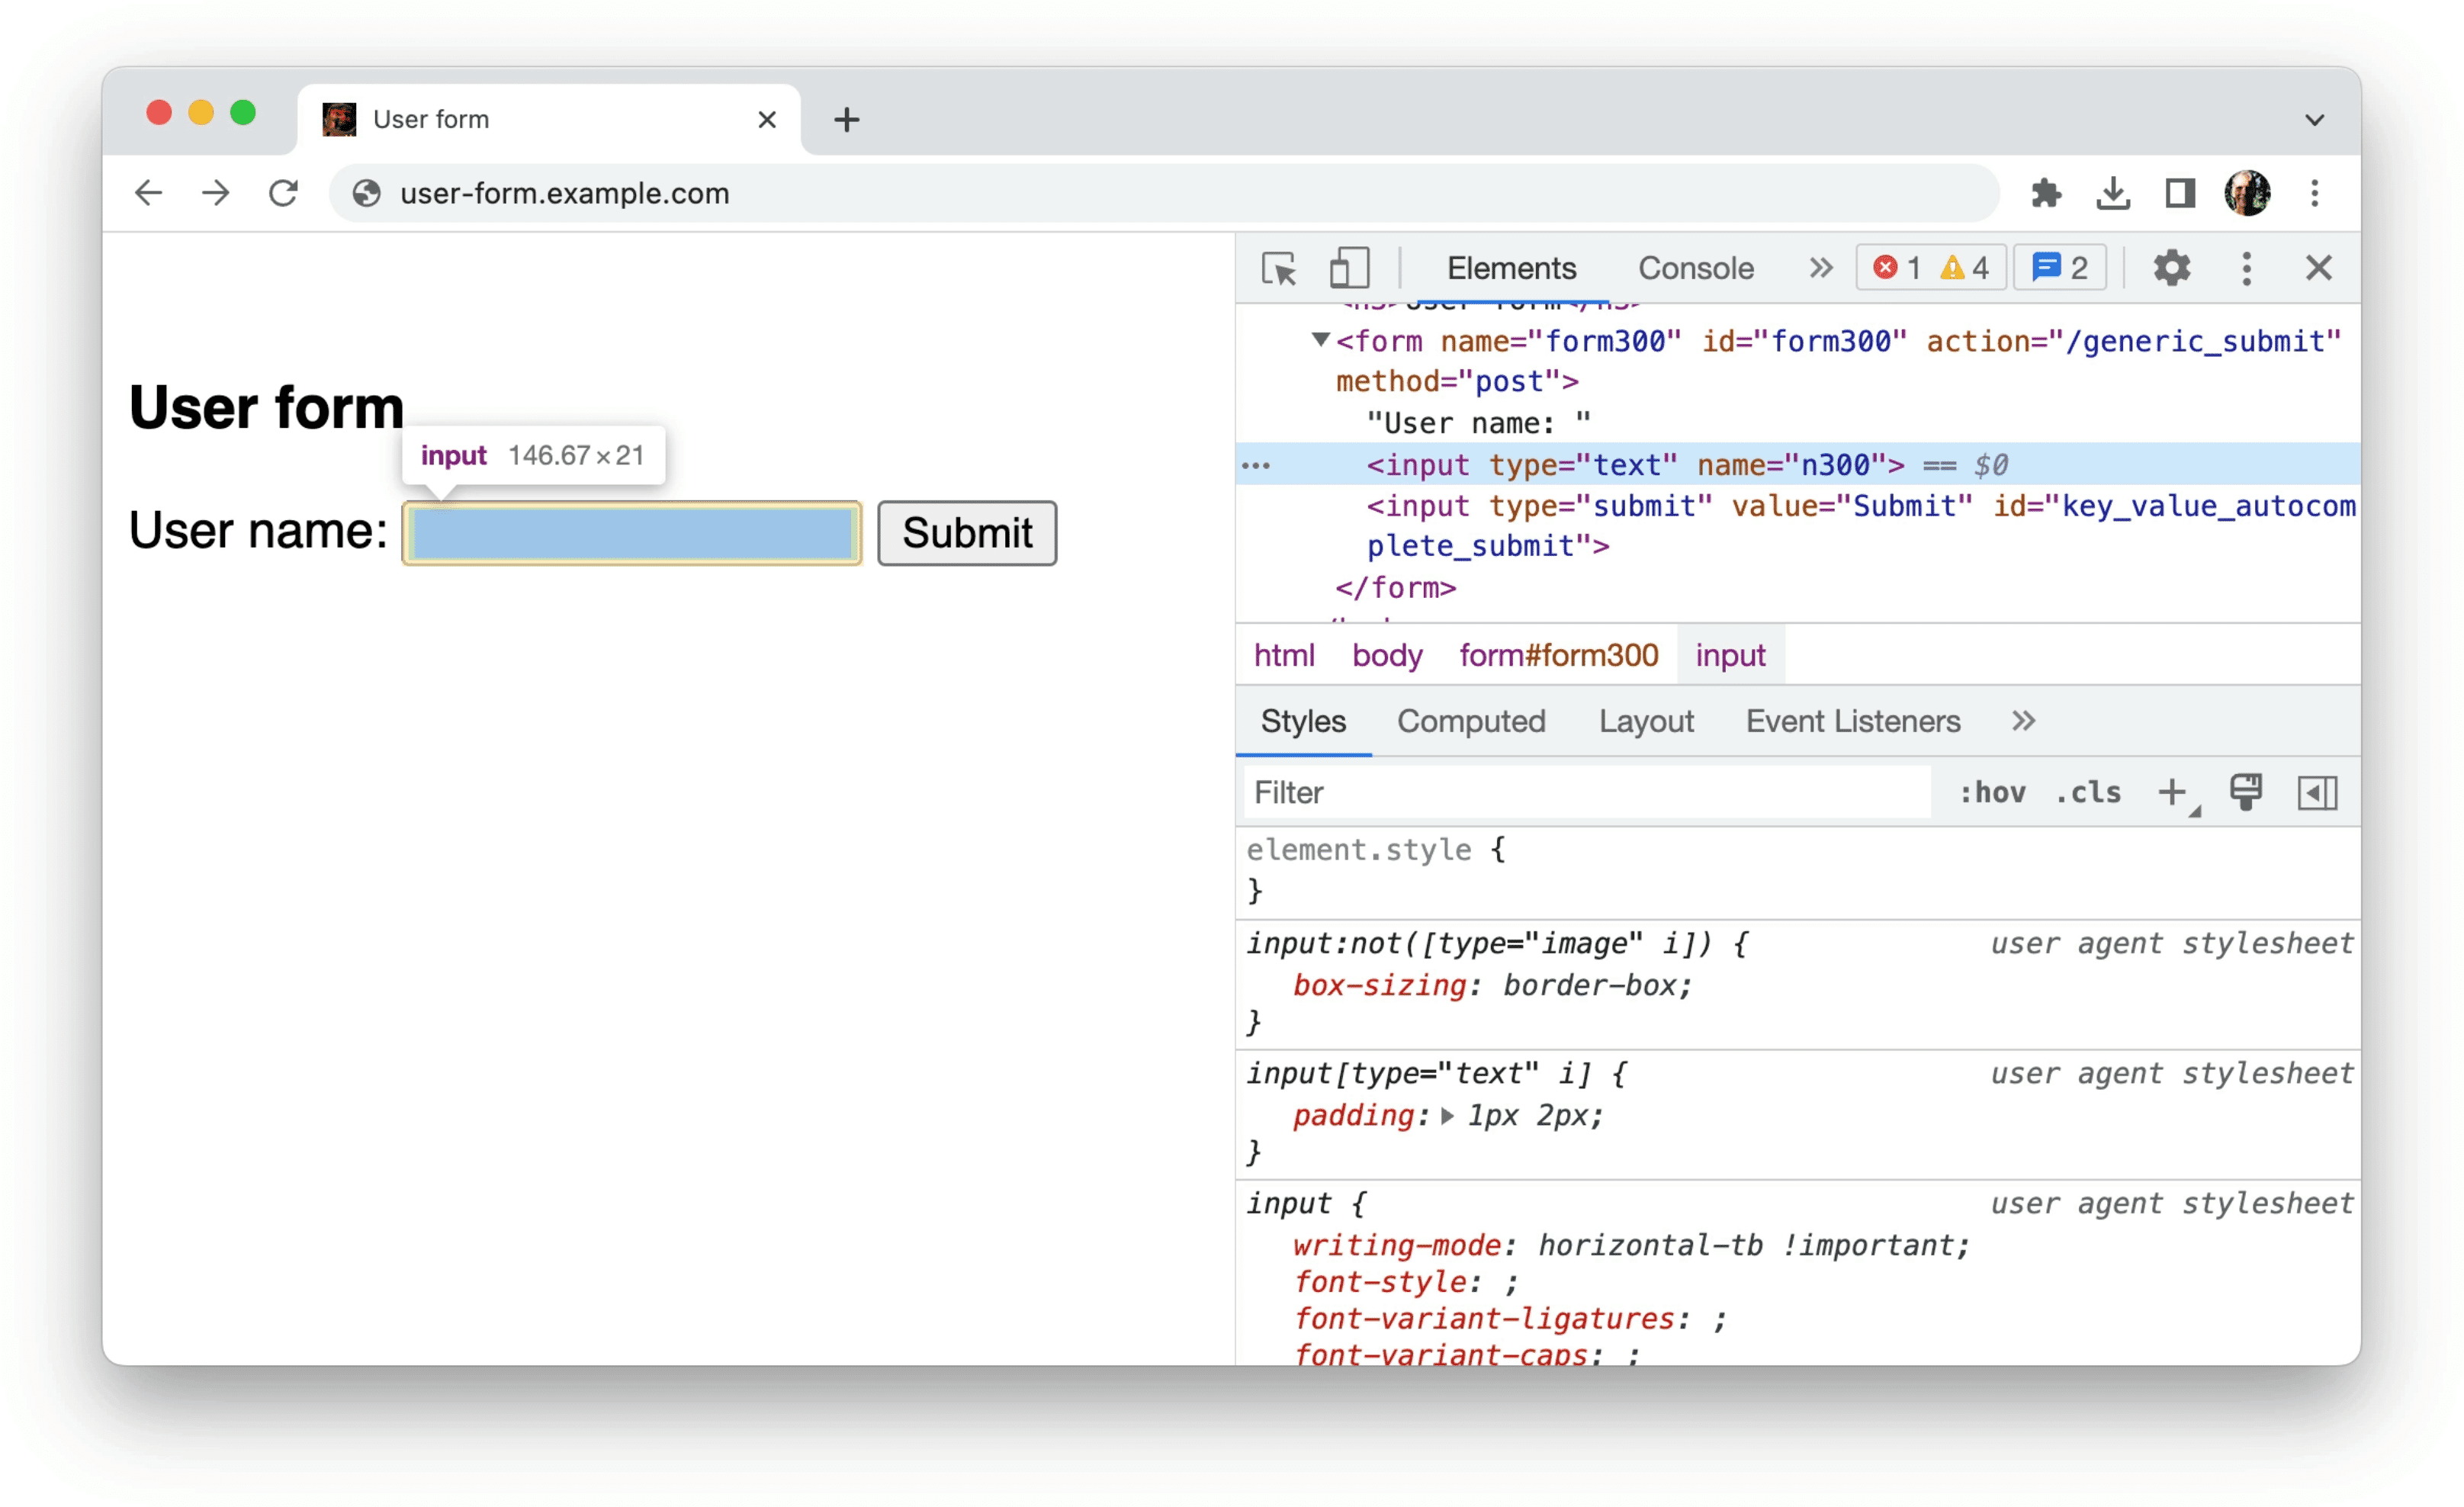 כלי הפיתוח ל-Chrome
מציגים בטופס מידע על הנתונים הלא מובְנים, כמו בדוגמה הקודמת: קלט יחיד שמכיל רק את המאפיינים type=text ו-name=n300.